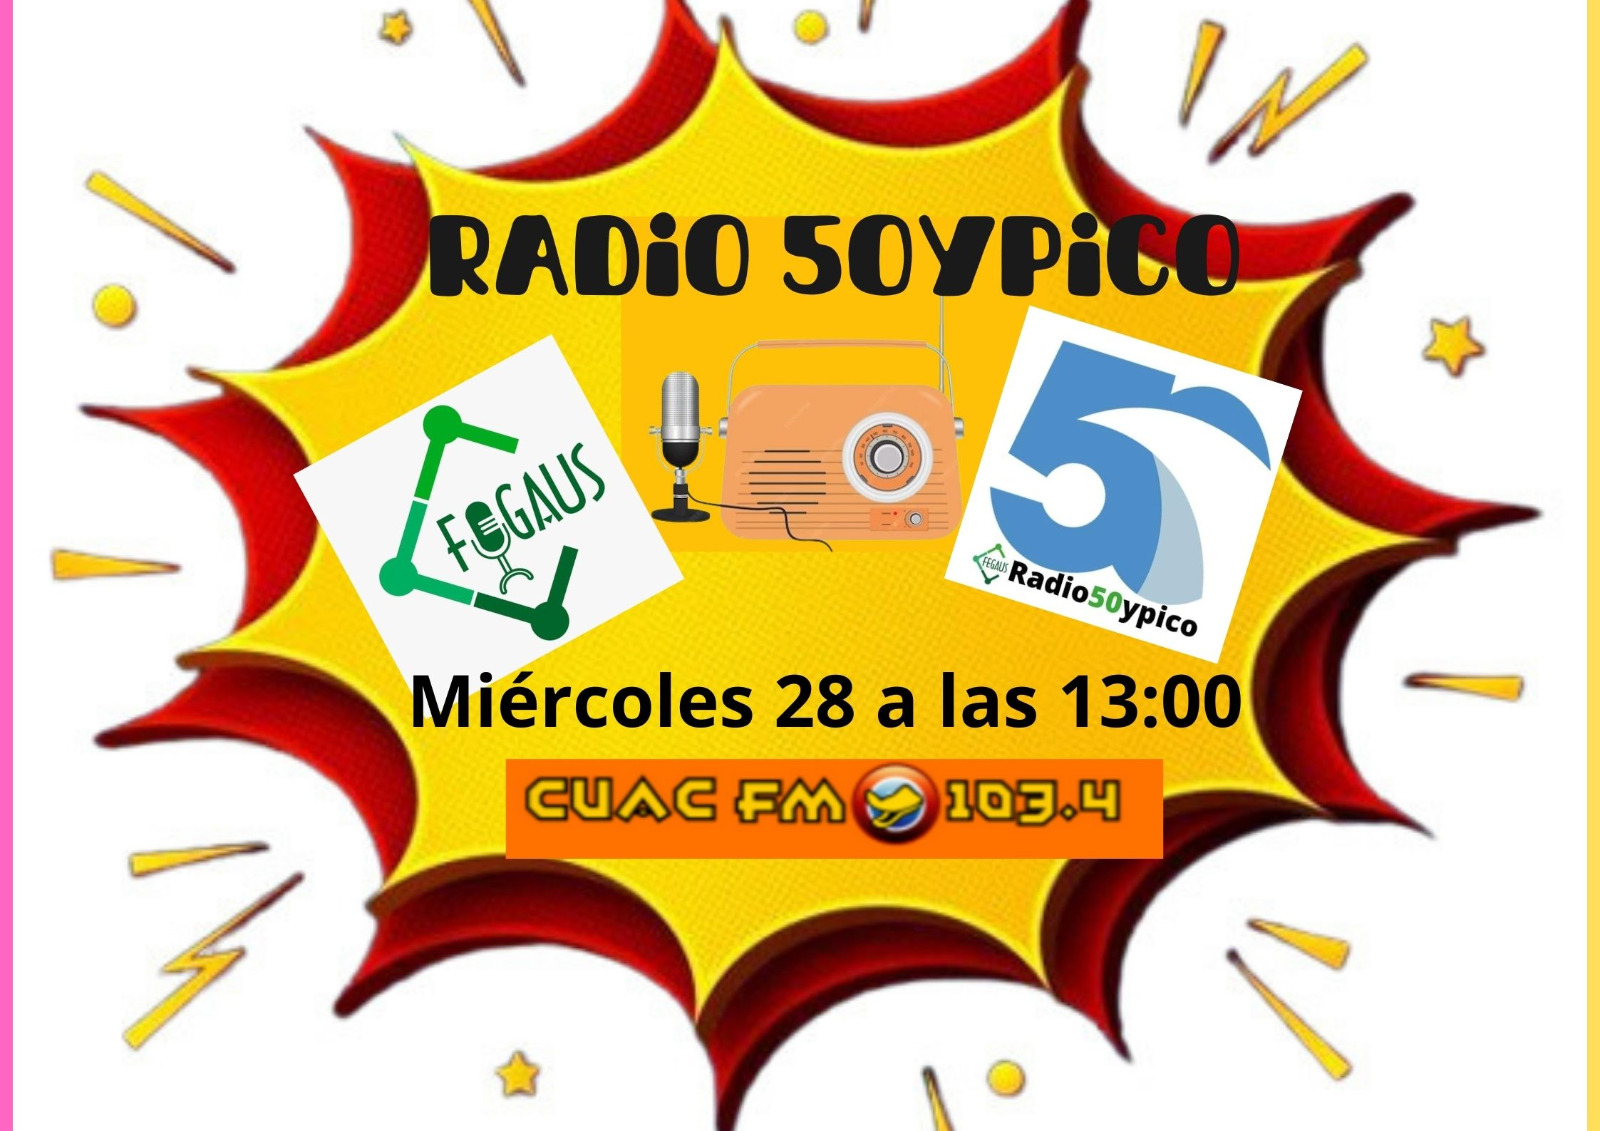 Radio 50 y Pico